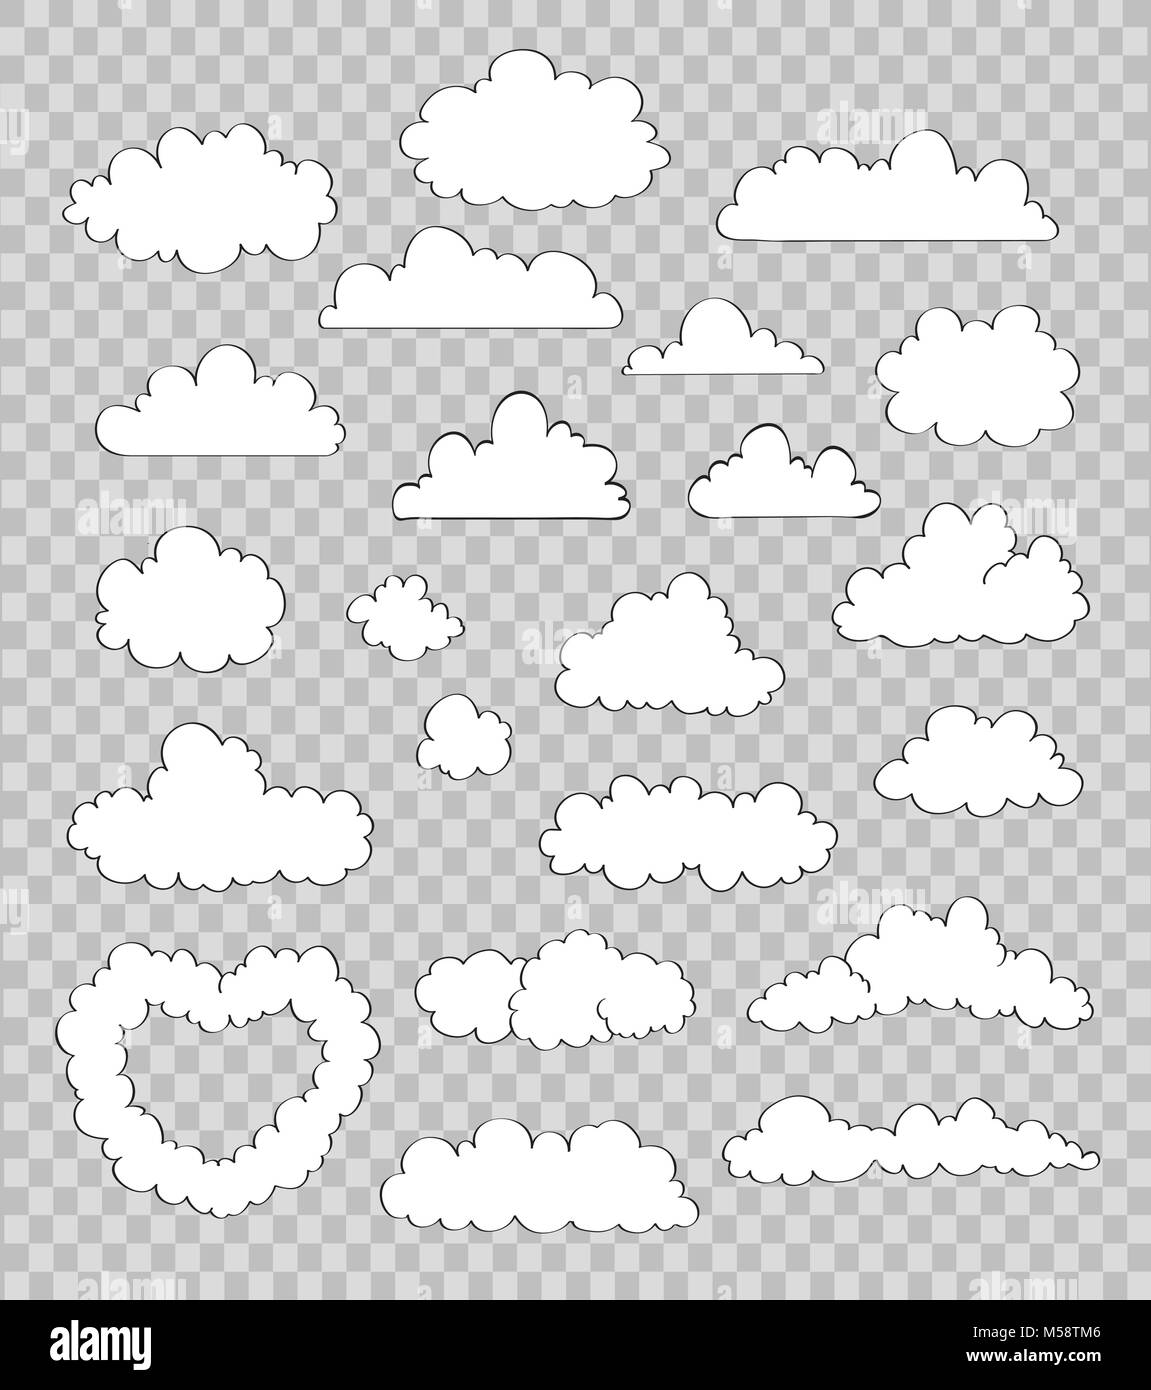 Jeu de nuages sur fond transparent. vector Illustration de Vecteur